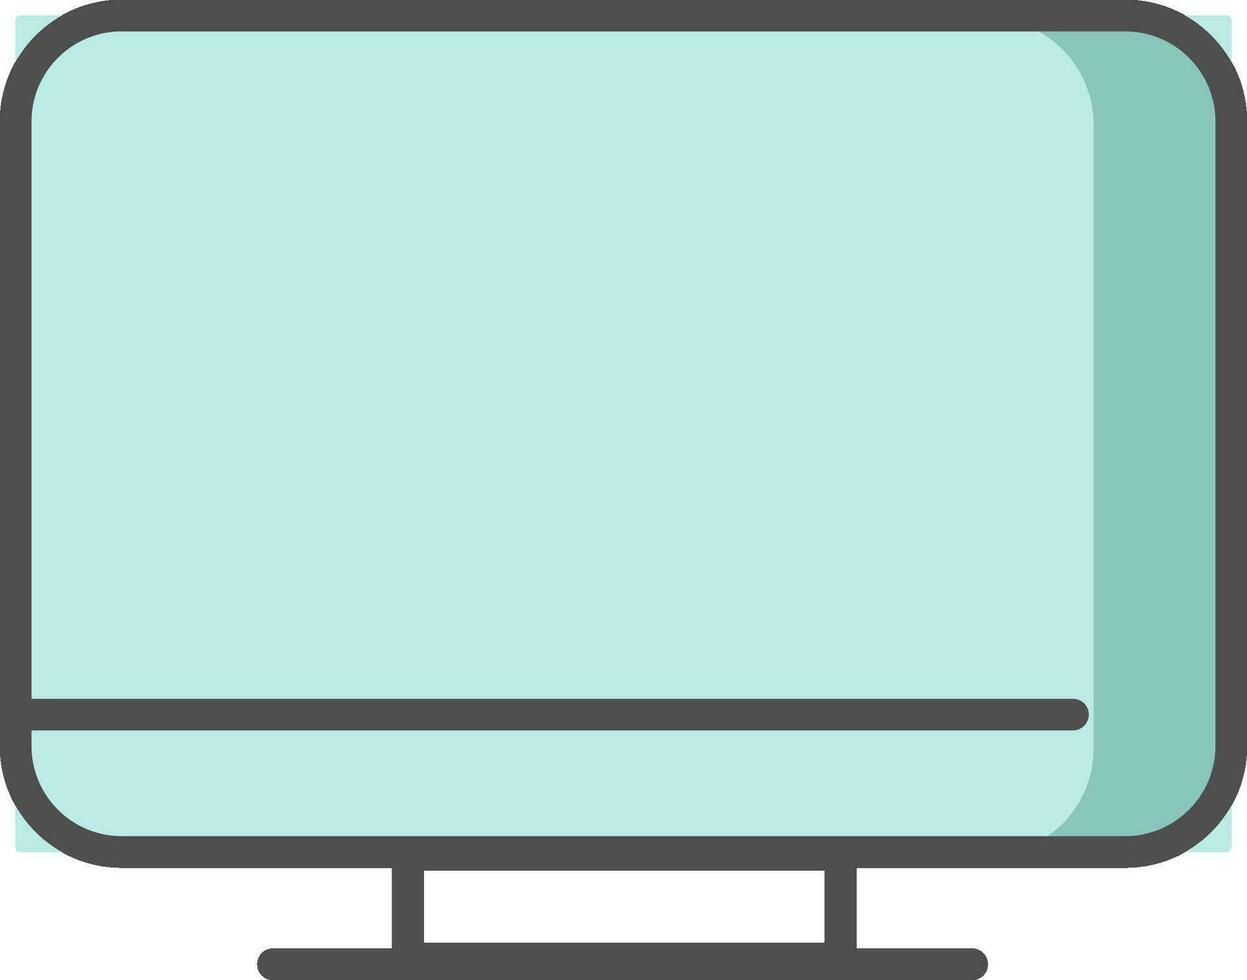 Desktop icon or symbol in blue color. vector